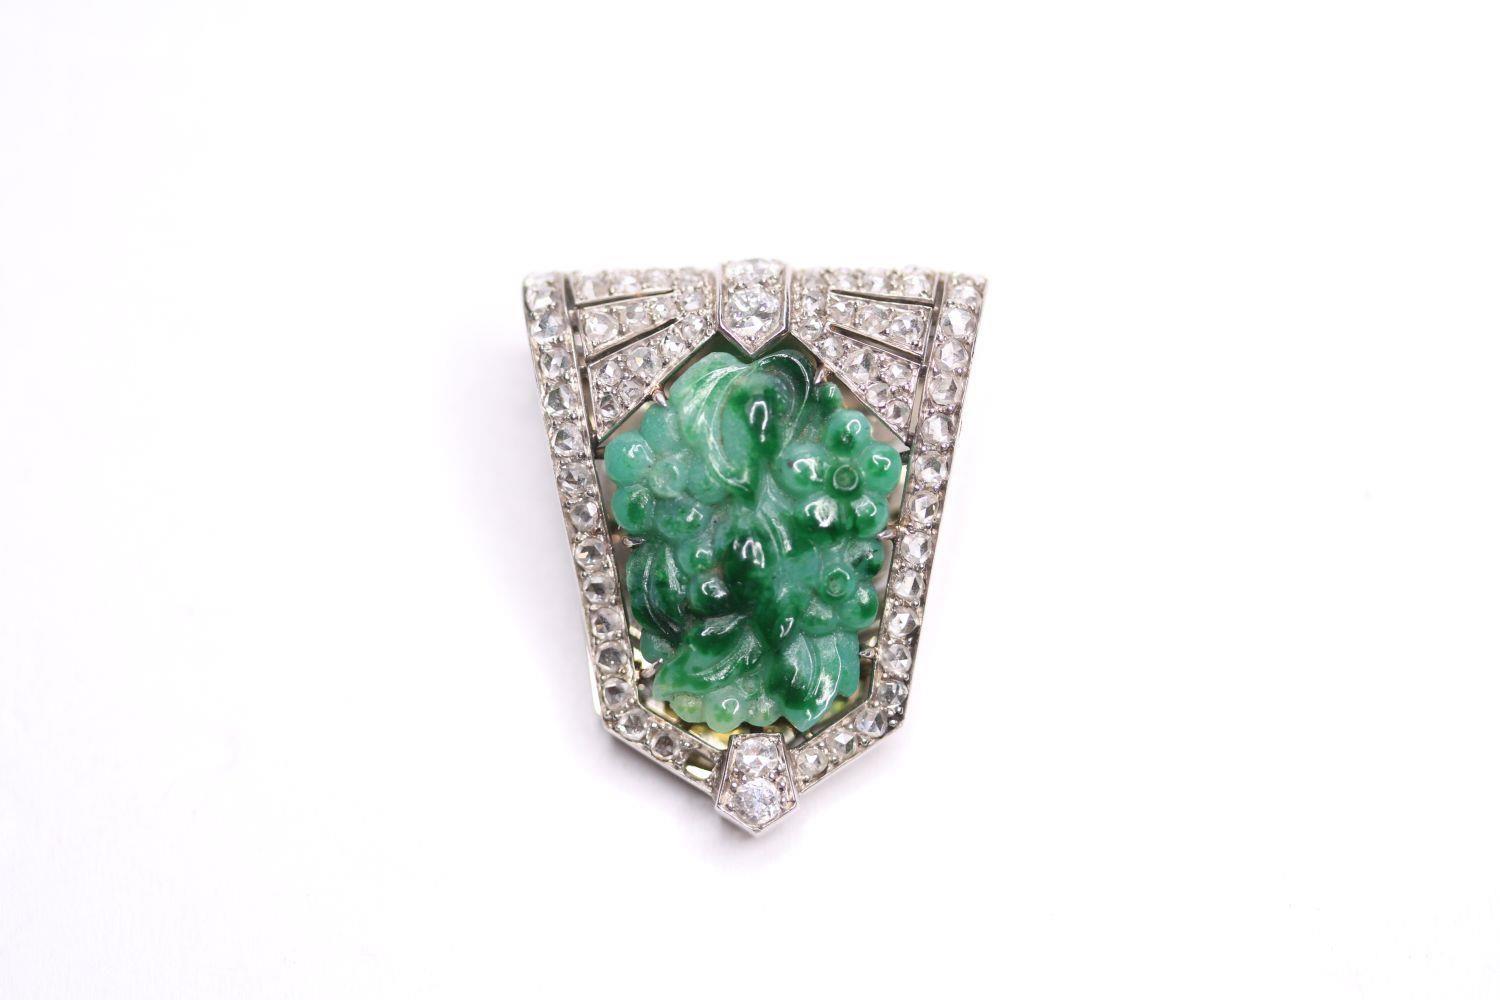 Jade & Diamond La Cloche Feres Clip, 30 x 24.5mm, stamped lacloche feres, please note that 1 diamond